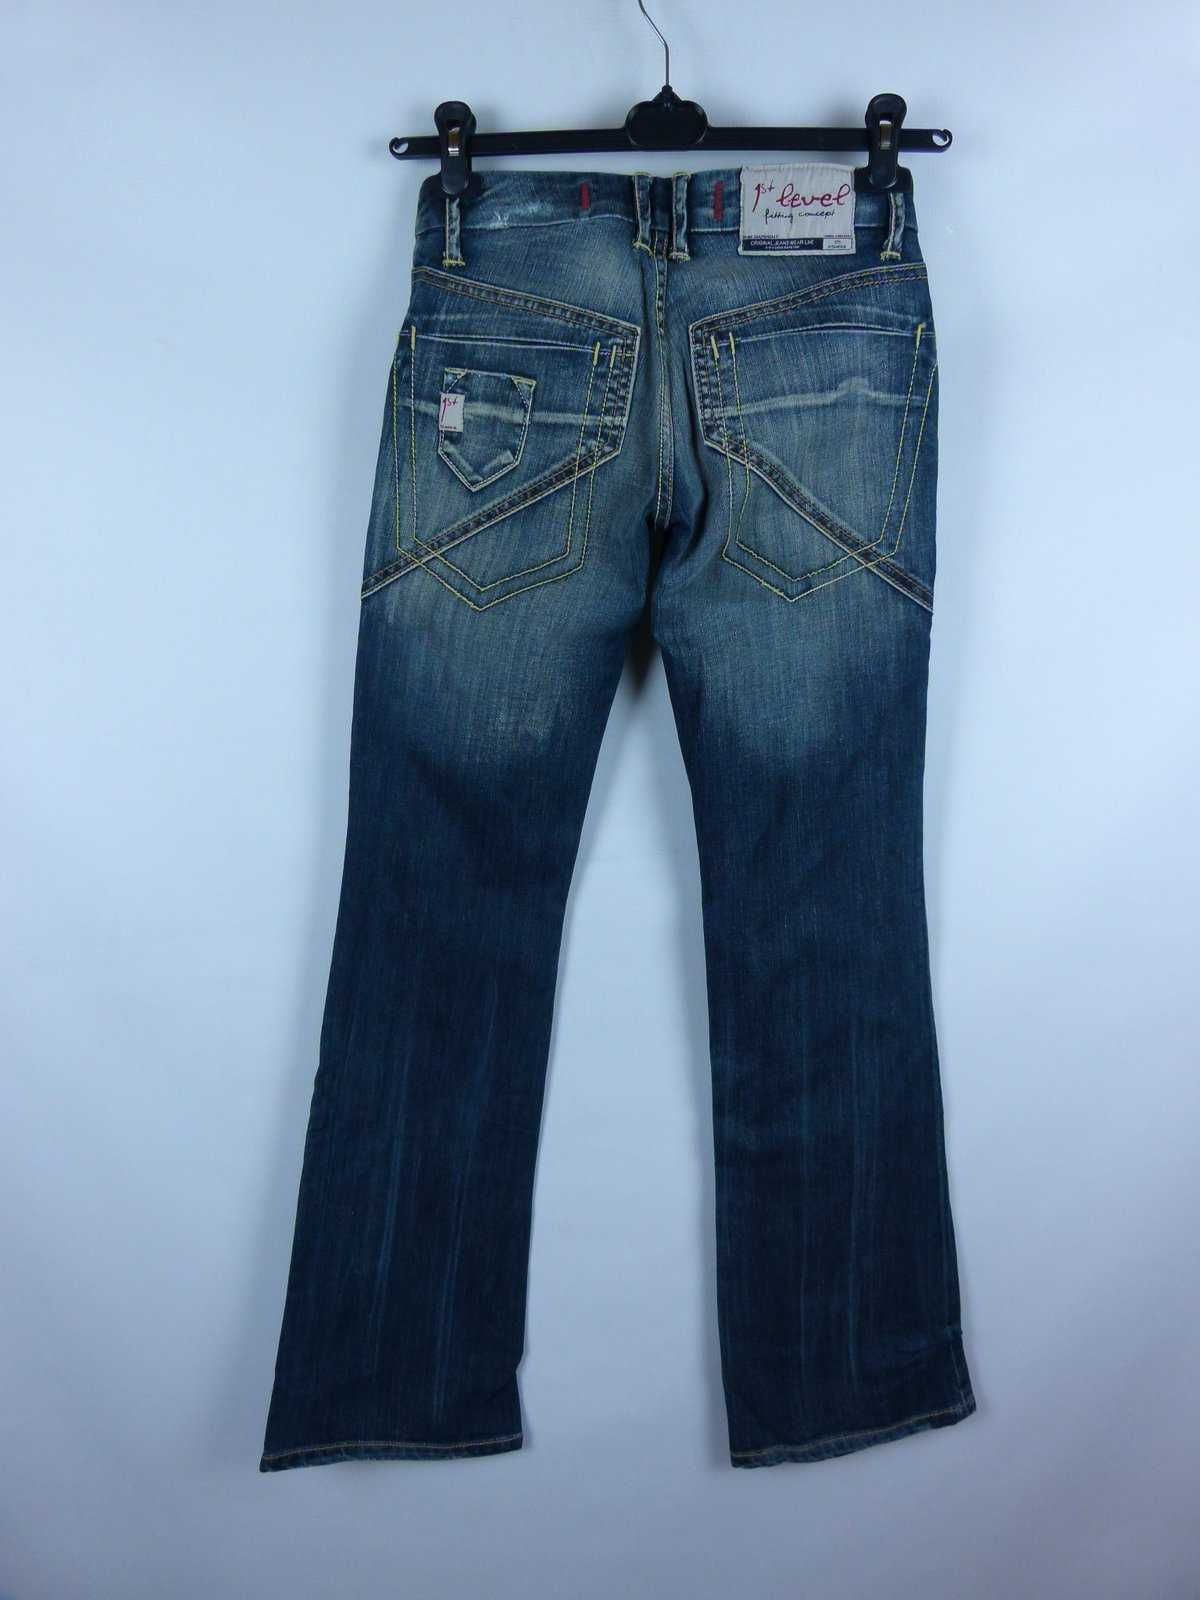 Salsa 1st Level spodnie dżins bootcut jeans / W26 T34